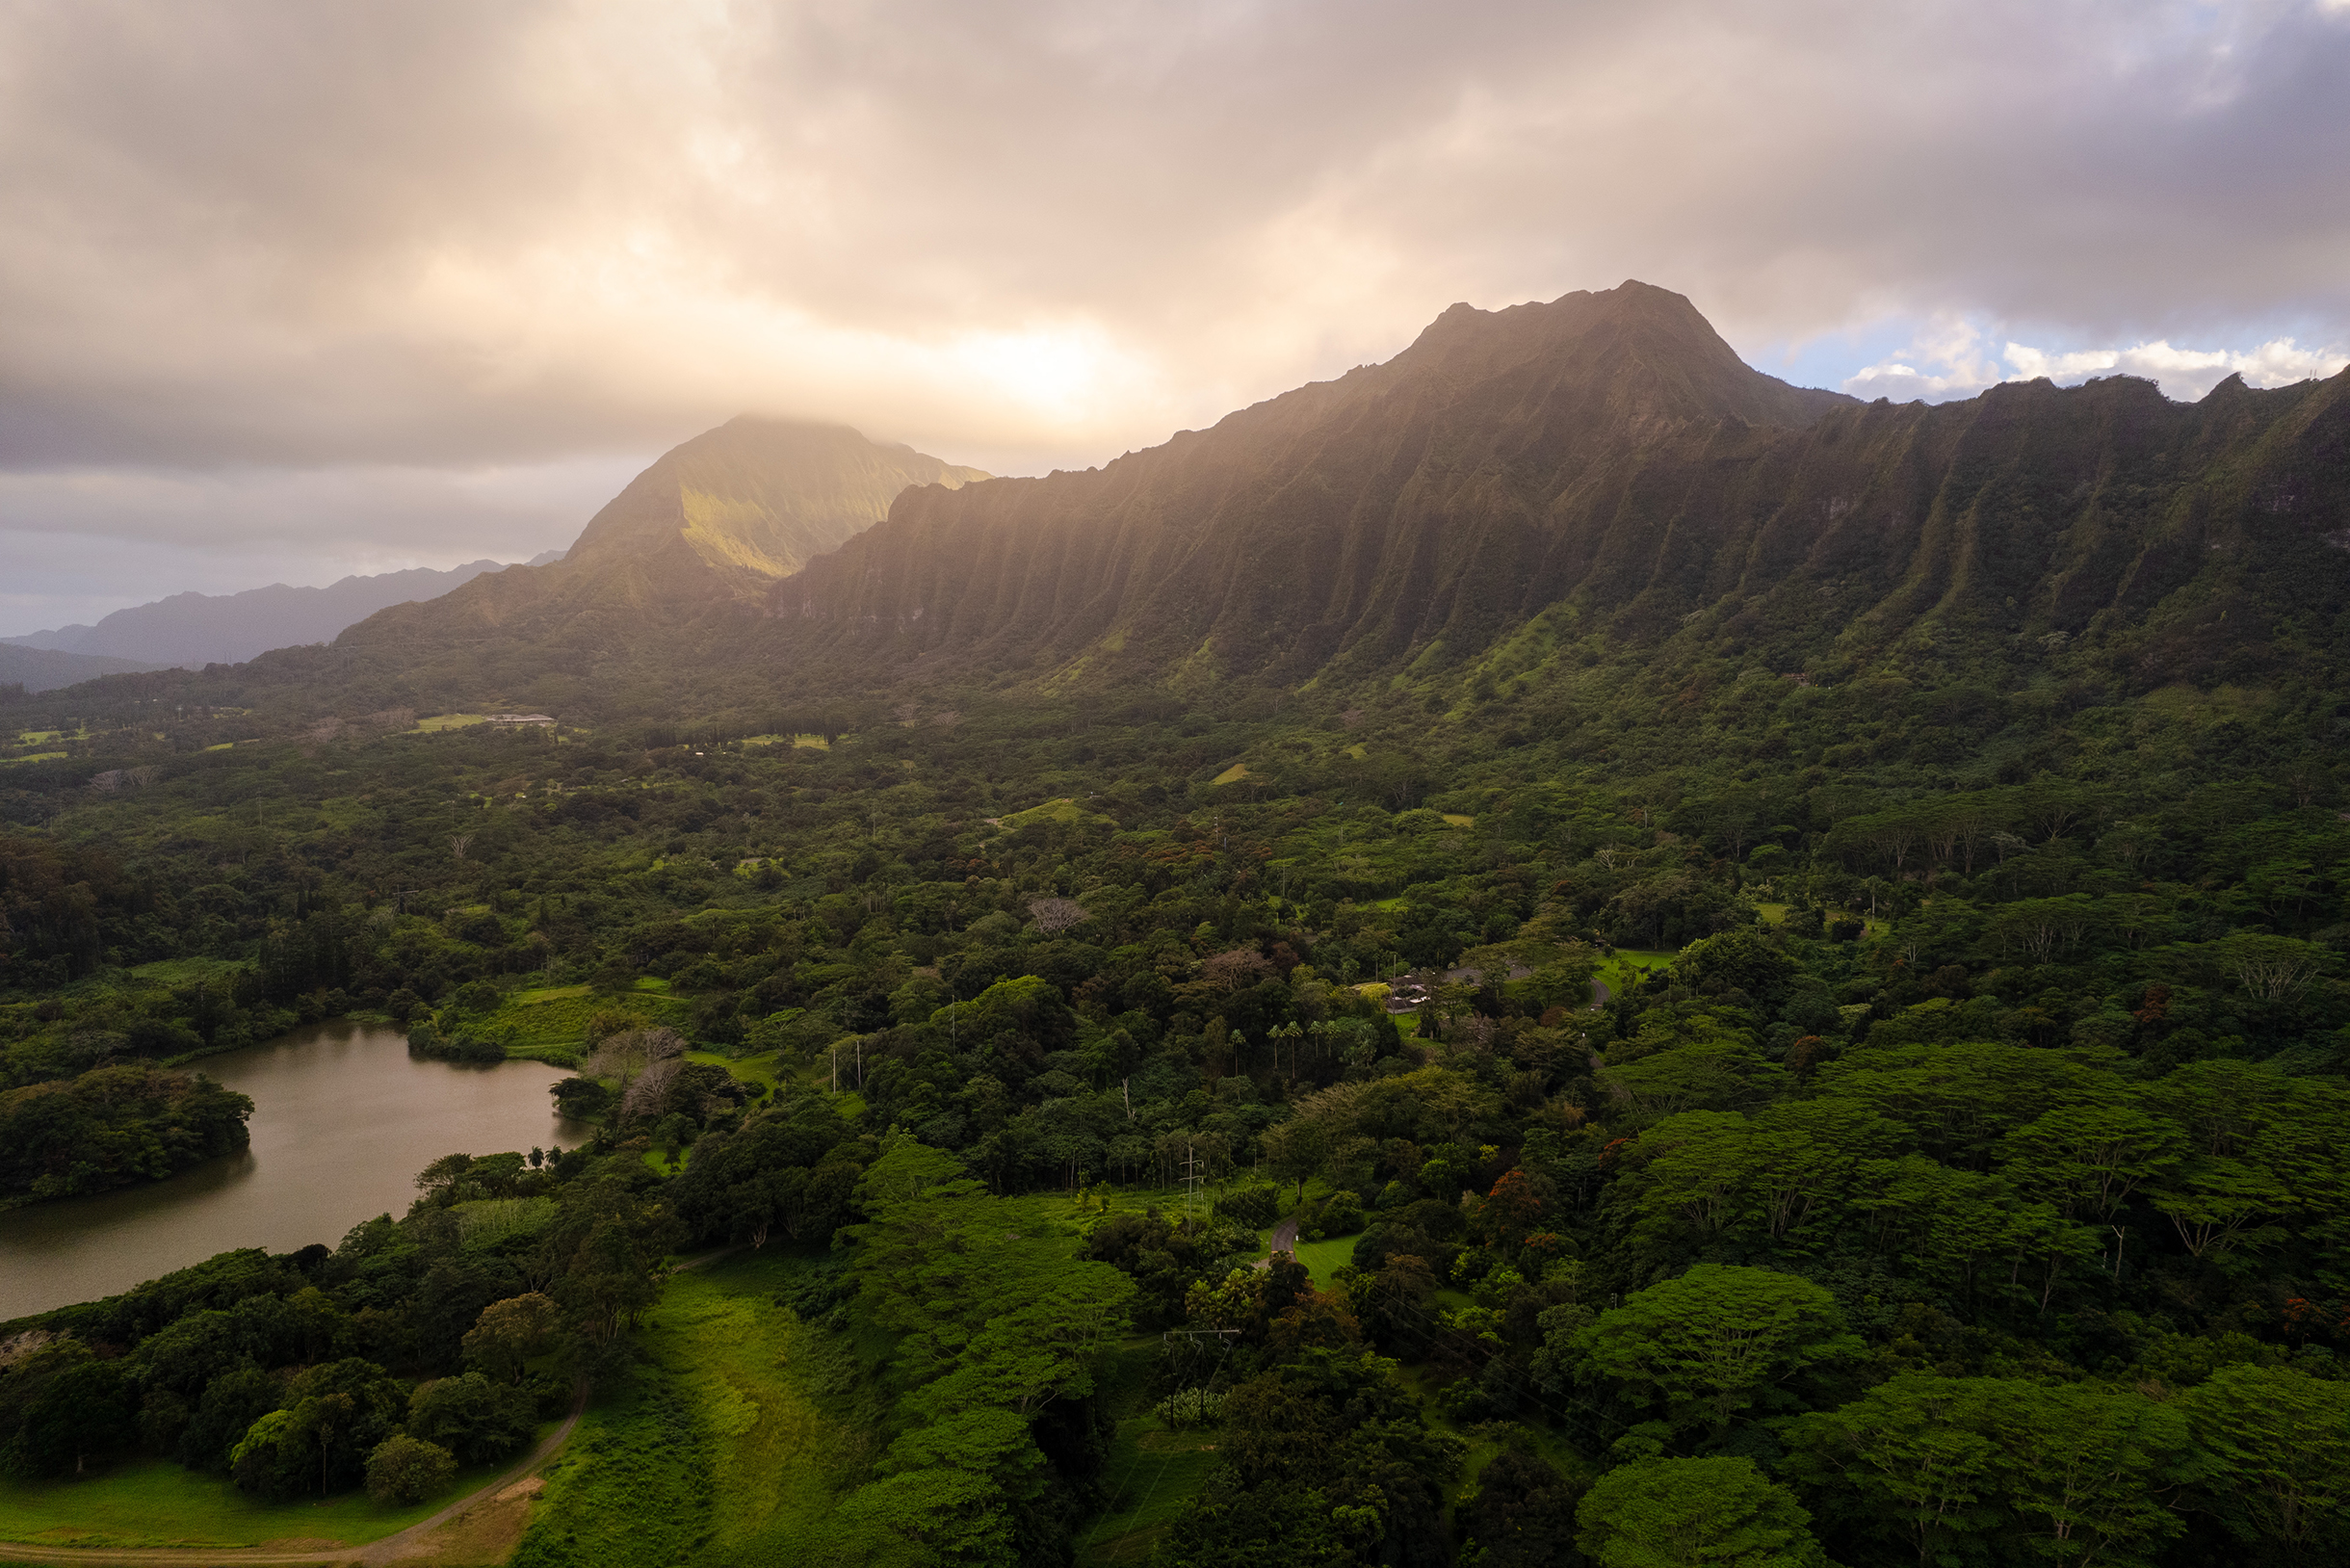 Закатное солнце скрывается за горным хребтом на Оаху. На Гавайях, если на одной стороне острова идет дождь, то на другой обязательно будет солнце. Здесь не бывает плохой погоды, а после дождя всегда будет радуга